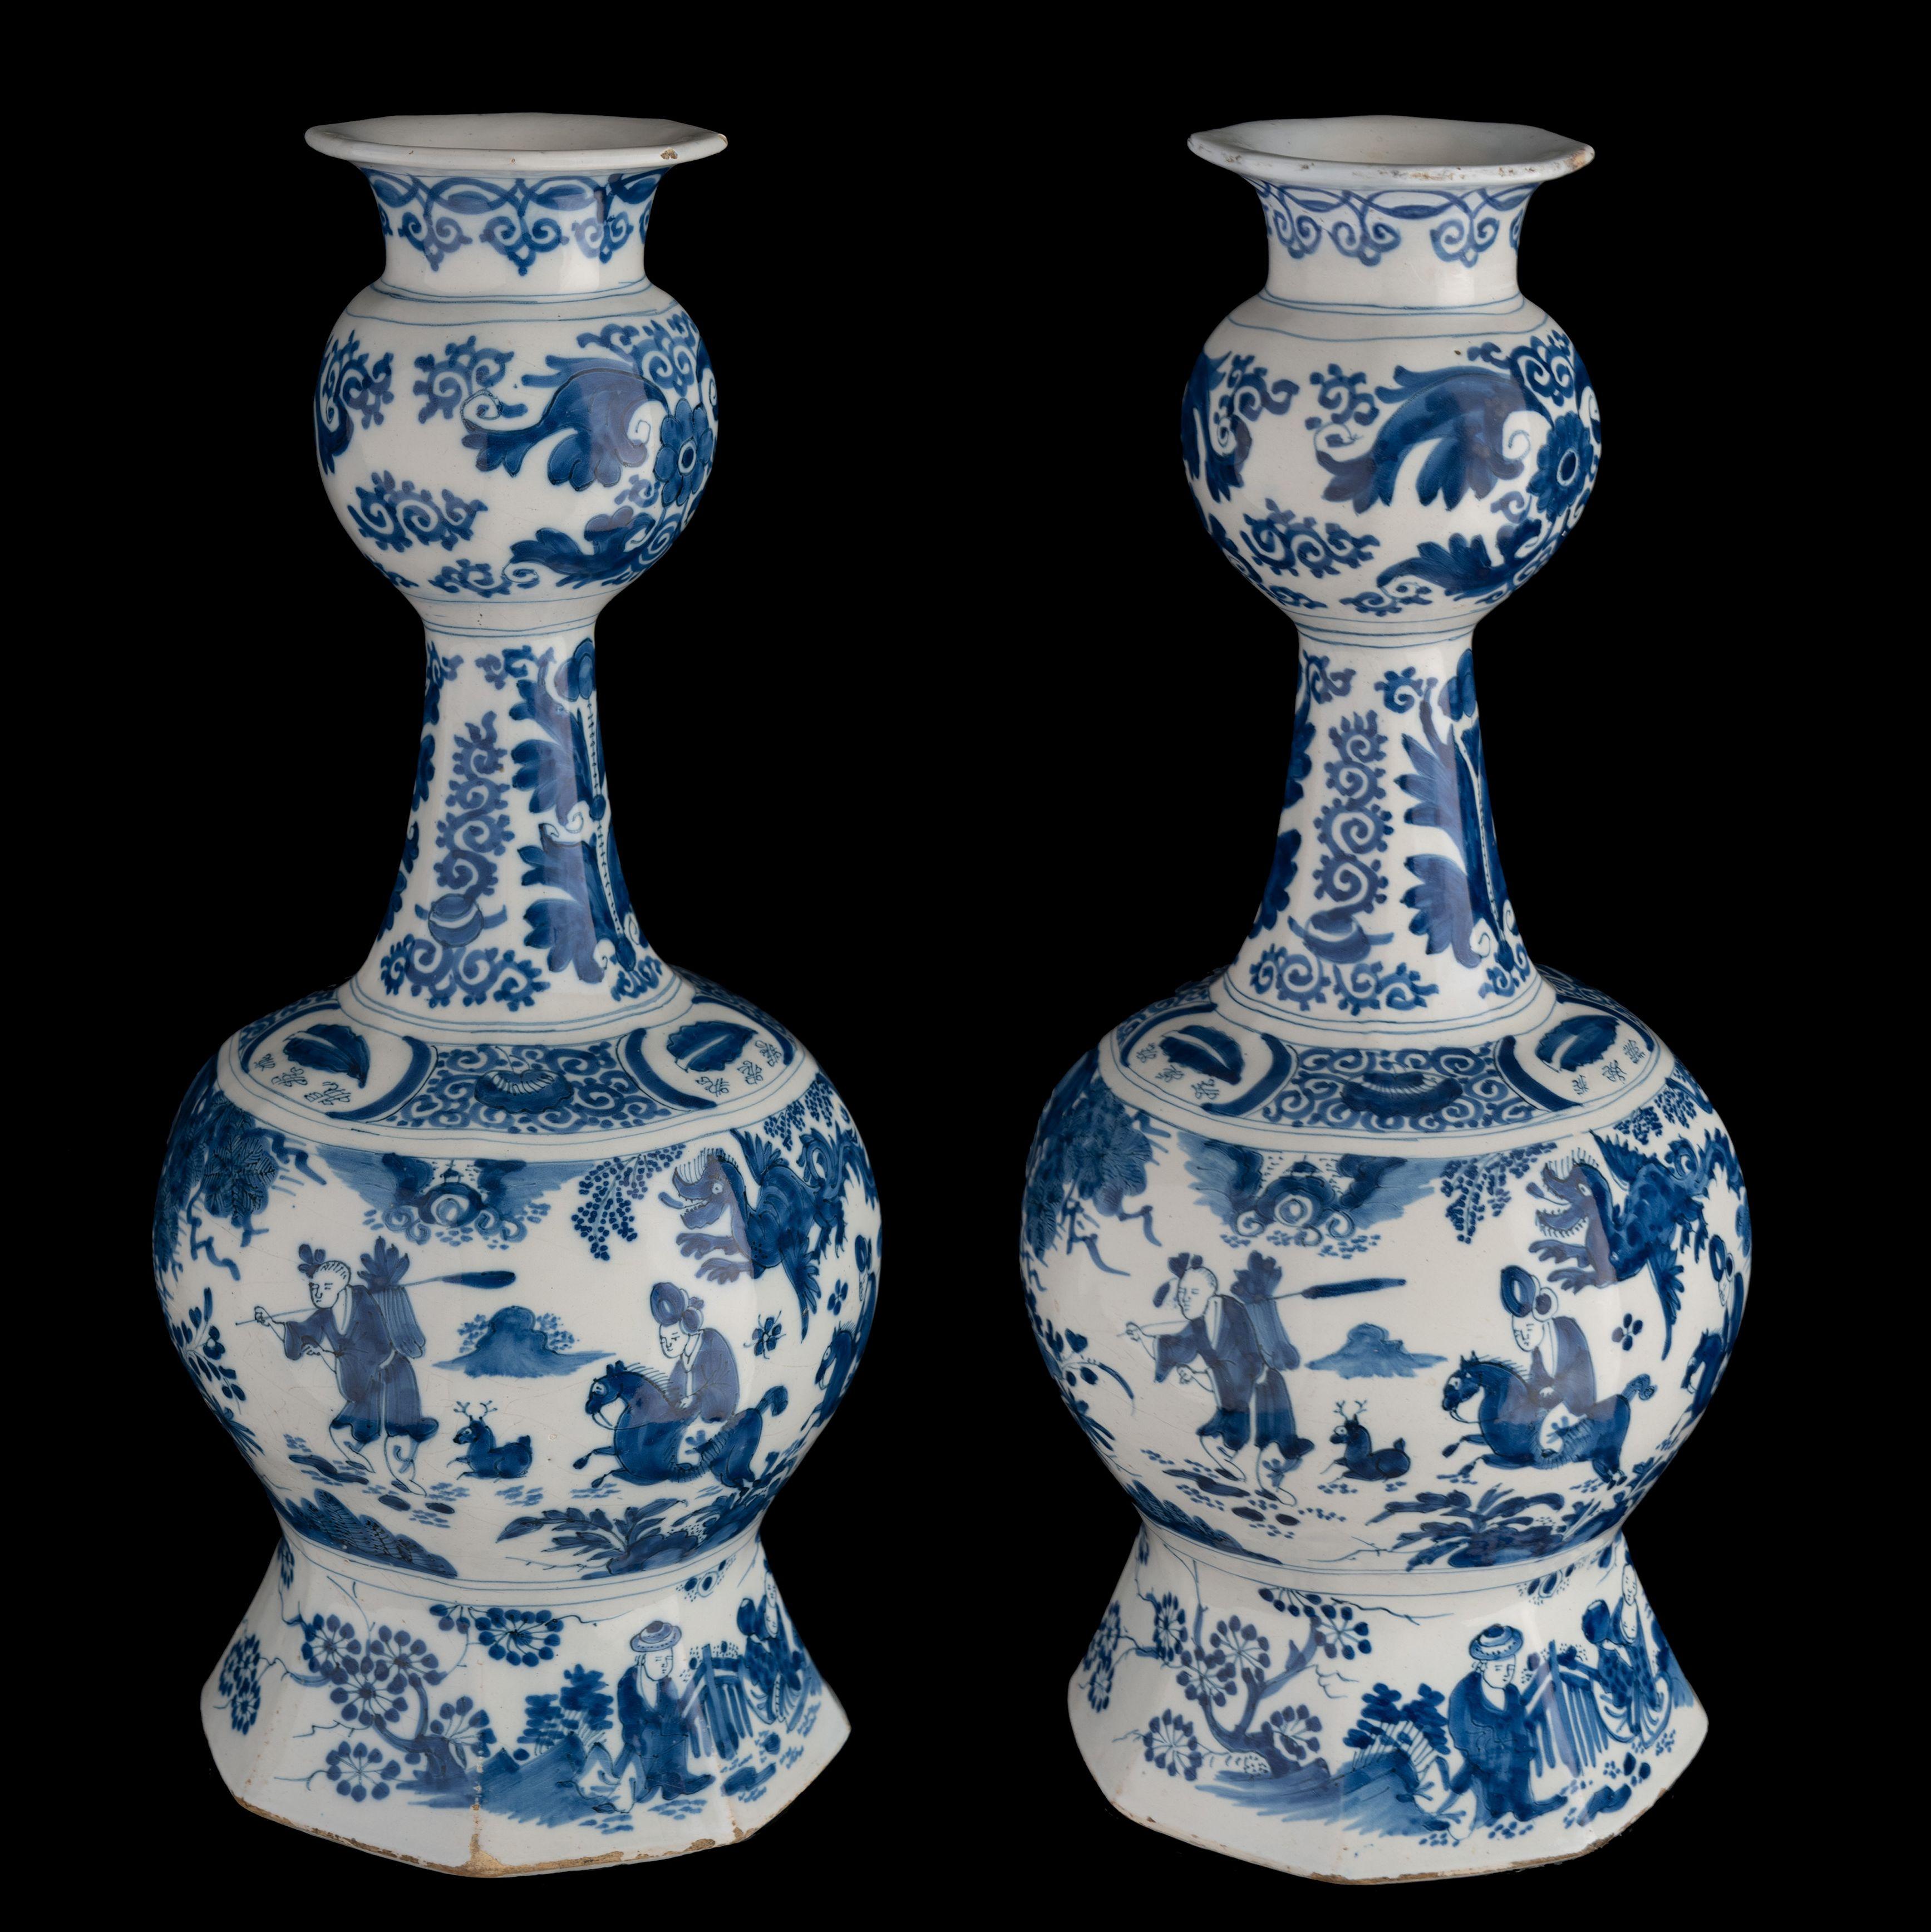 Ein Paar blau-weiße Chinoiserie-Flaschenvasen mit Knoblauchkopf. Delft, 1680-1690 

Die achteckigen Knoblauchkopfvasen stehen auf einem breiten, gespreizten Fuß und sind in Blau mit Chinoiserie-Dekor bemalt. Auf dem Bauch sind eine orientalische